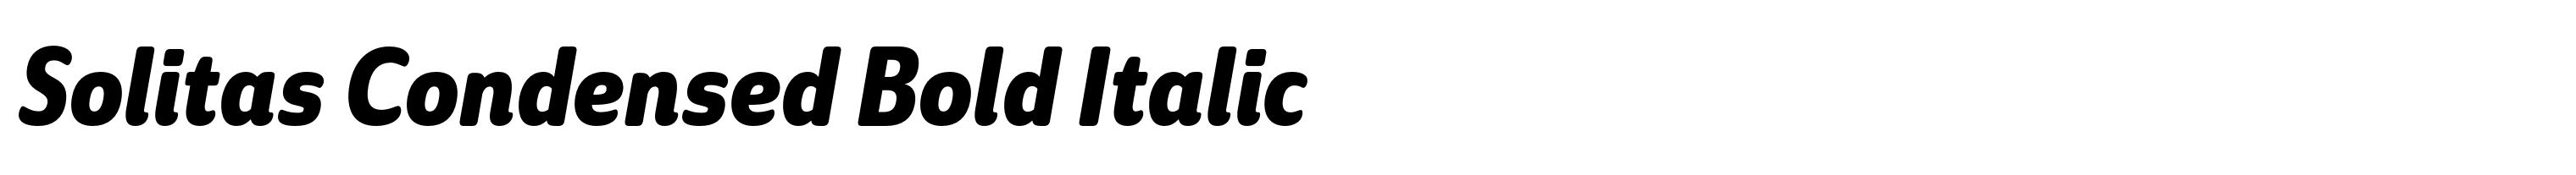 Solitas Condensed Bold Italic